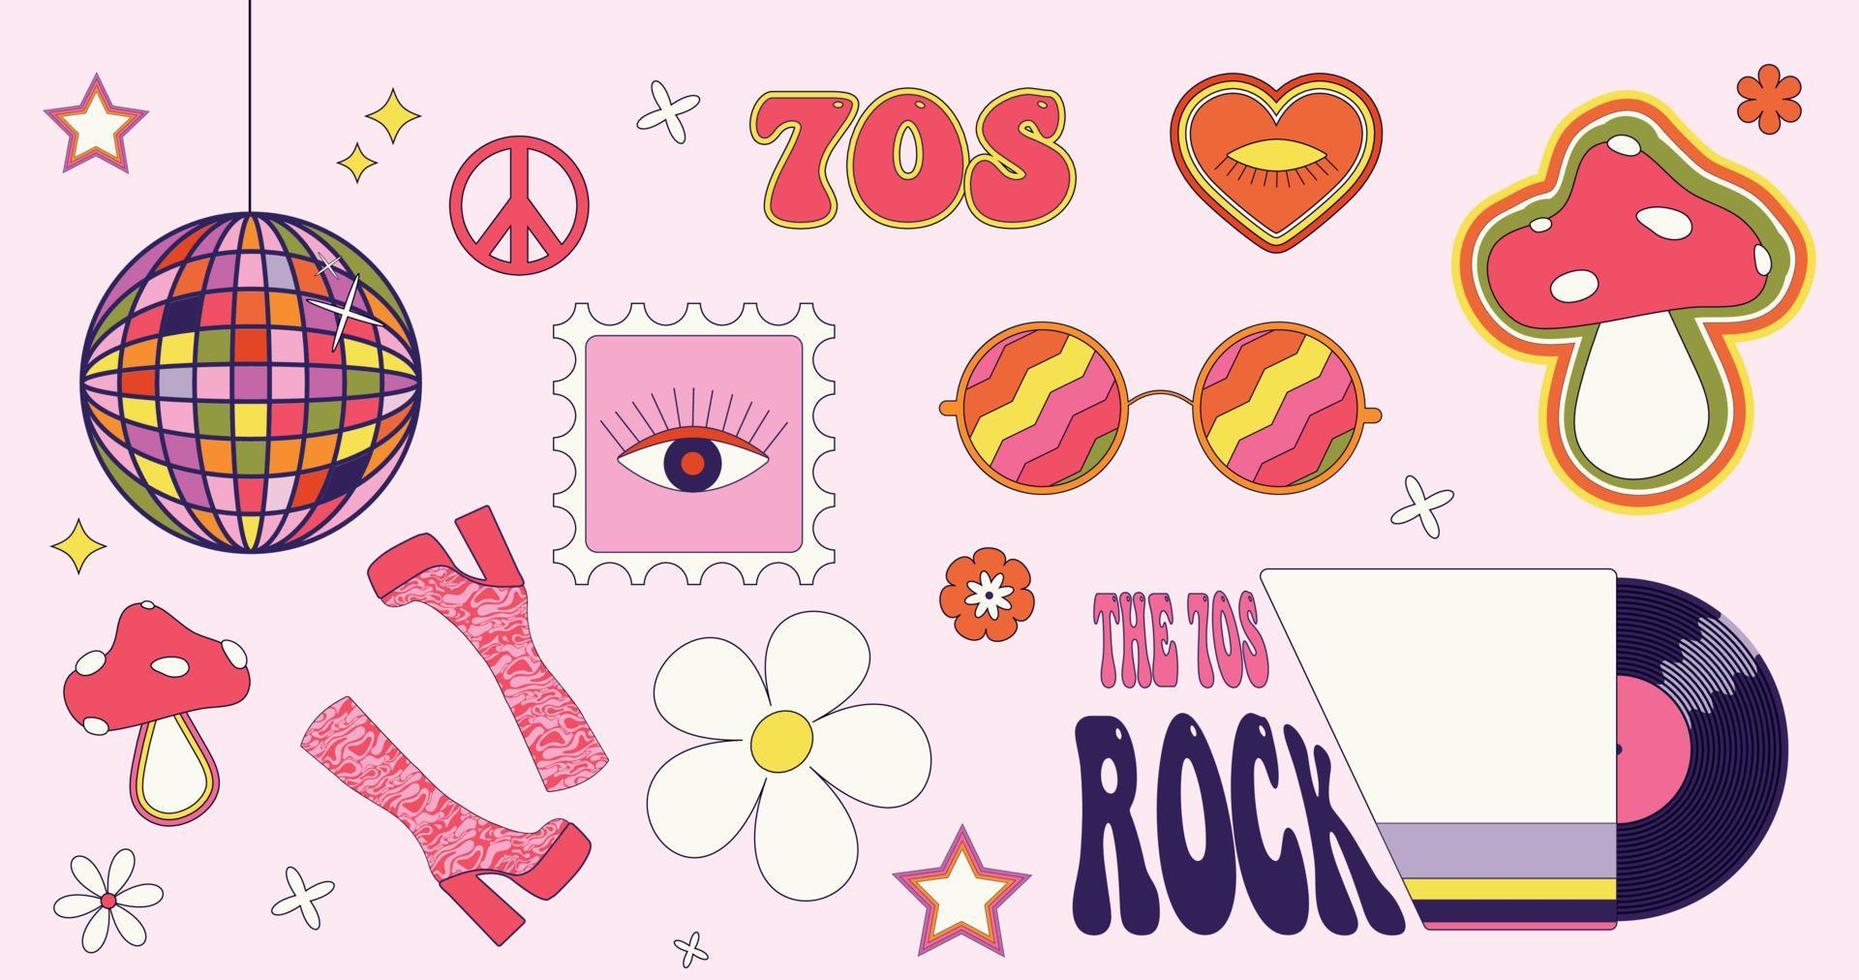 conjunto de adesivos vetoriais dos anos 70. bola de discoteca, botas de cano alto, símbolo da paz, cogumelos, hippies, disco de vinil e óculos redondos. vetor